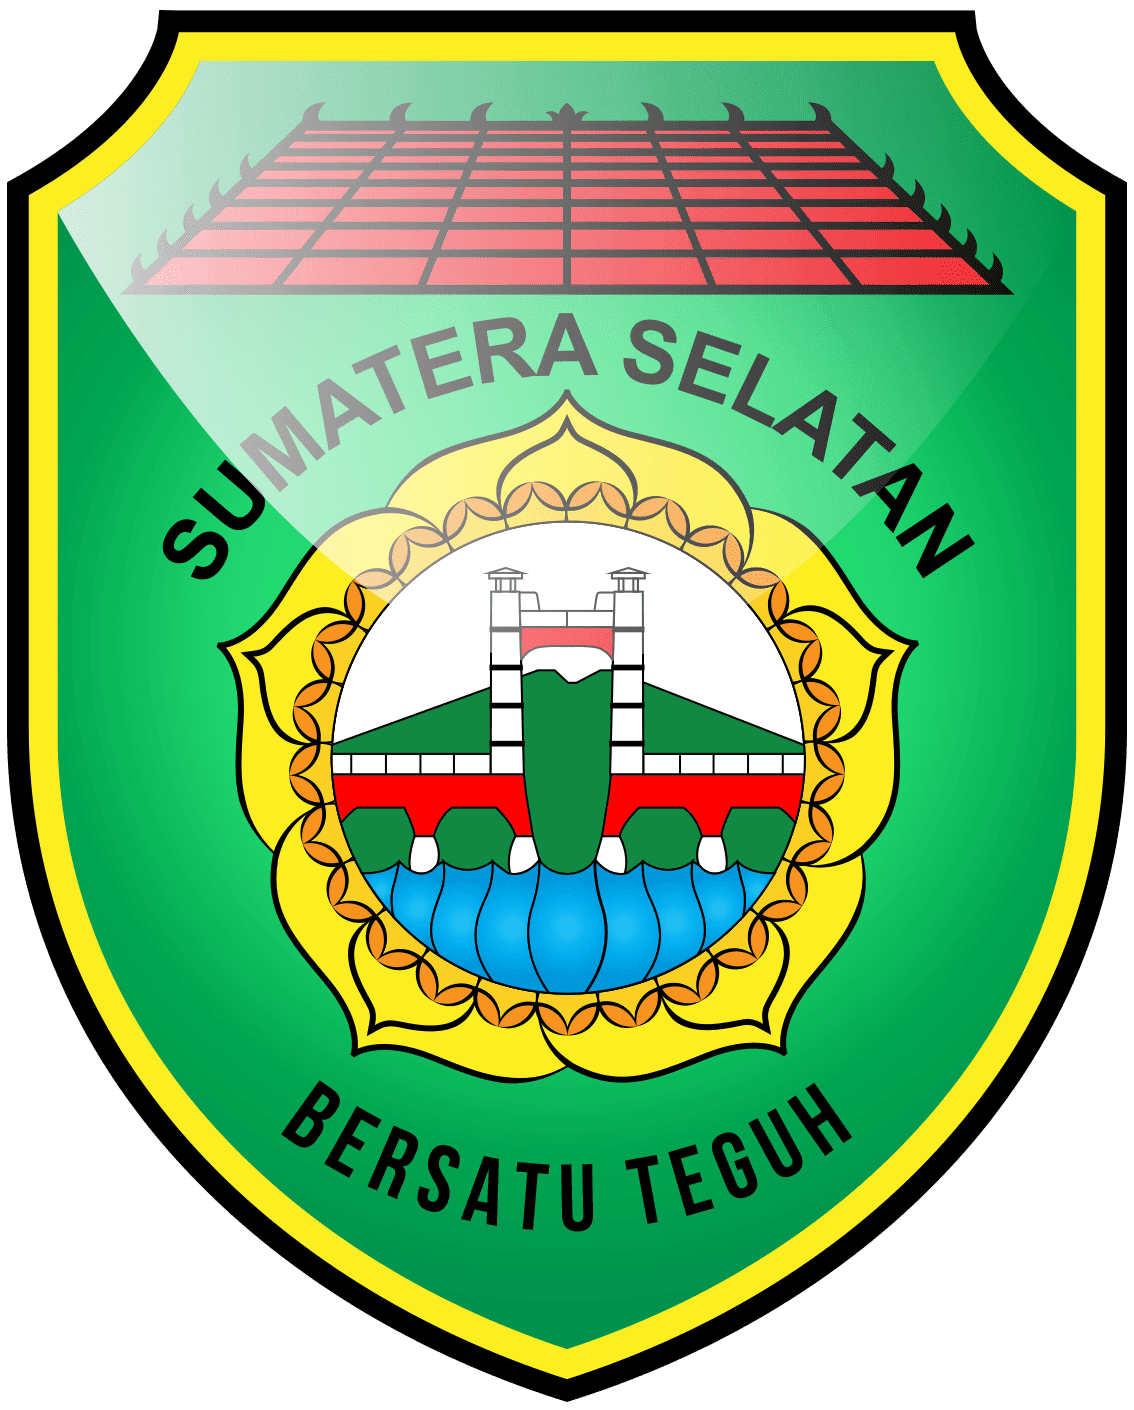 Lambang Propinsi Sumatera  Selatan  237 Design